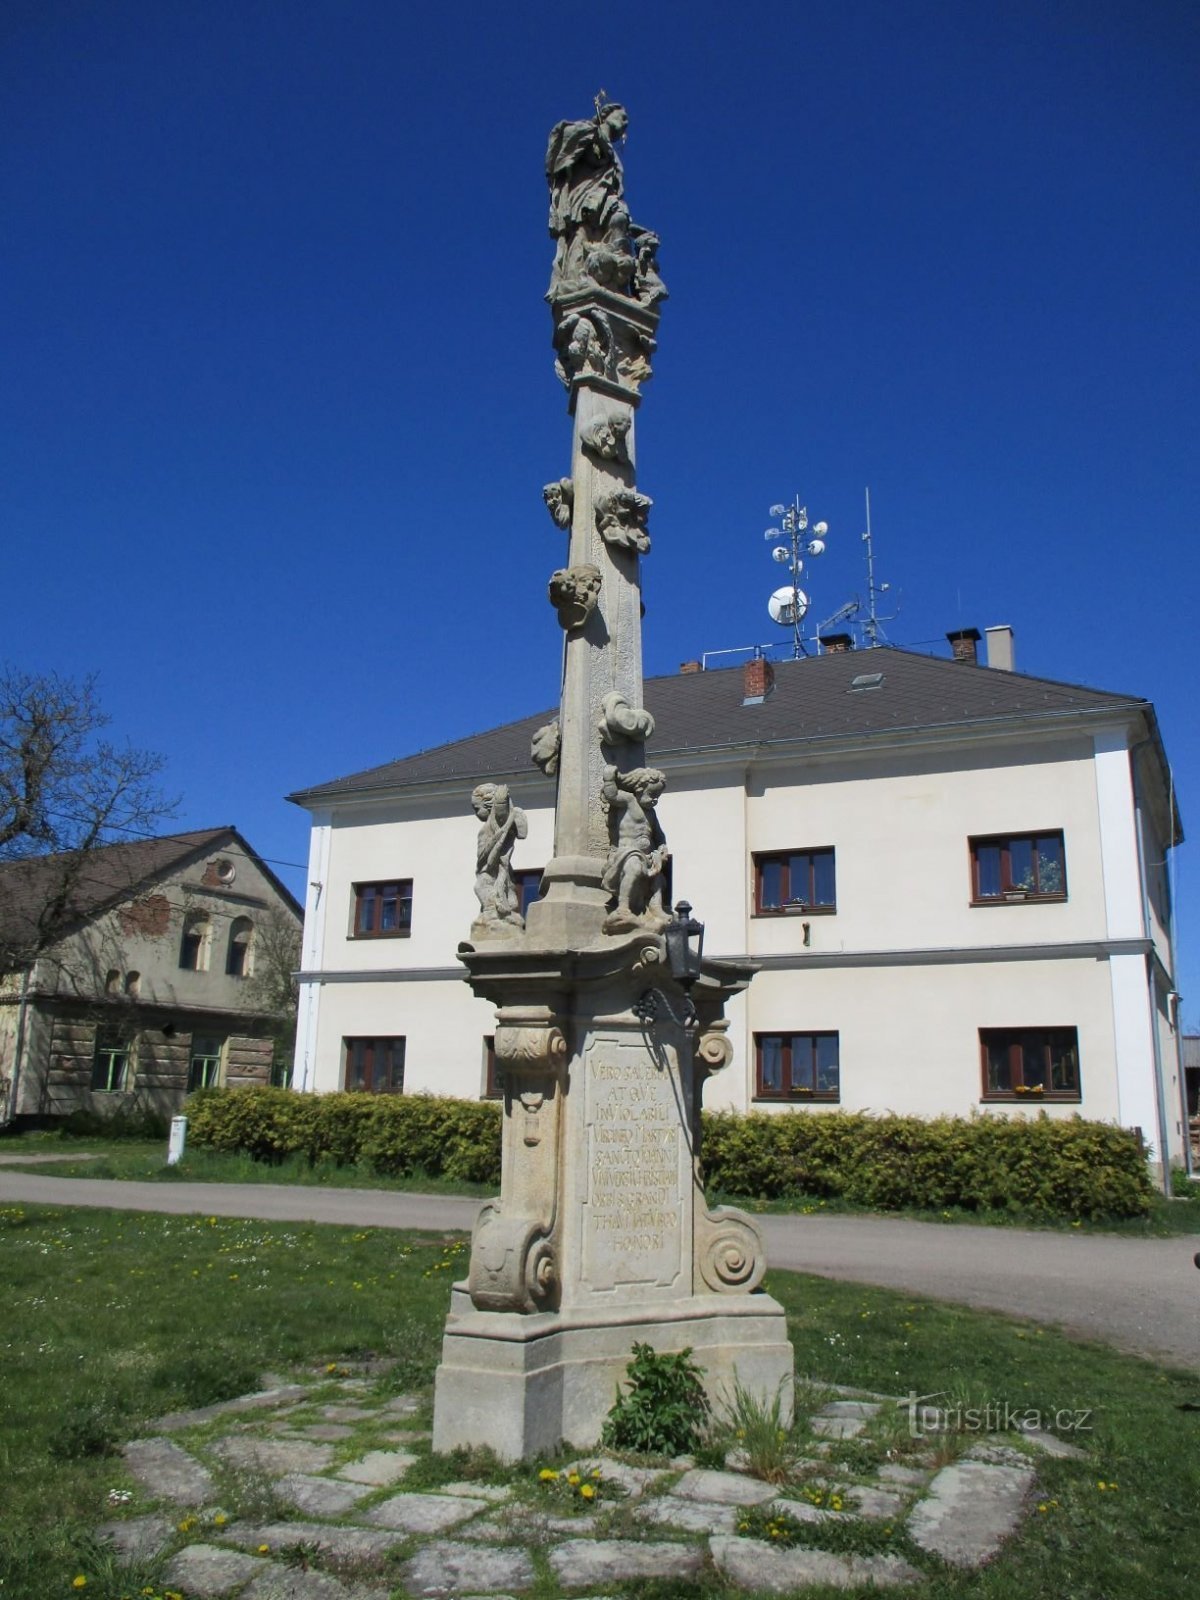 Steber s kipom sv. Janez Nepomucki (Chotěborky, 20.4.2020. april XNUMX)